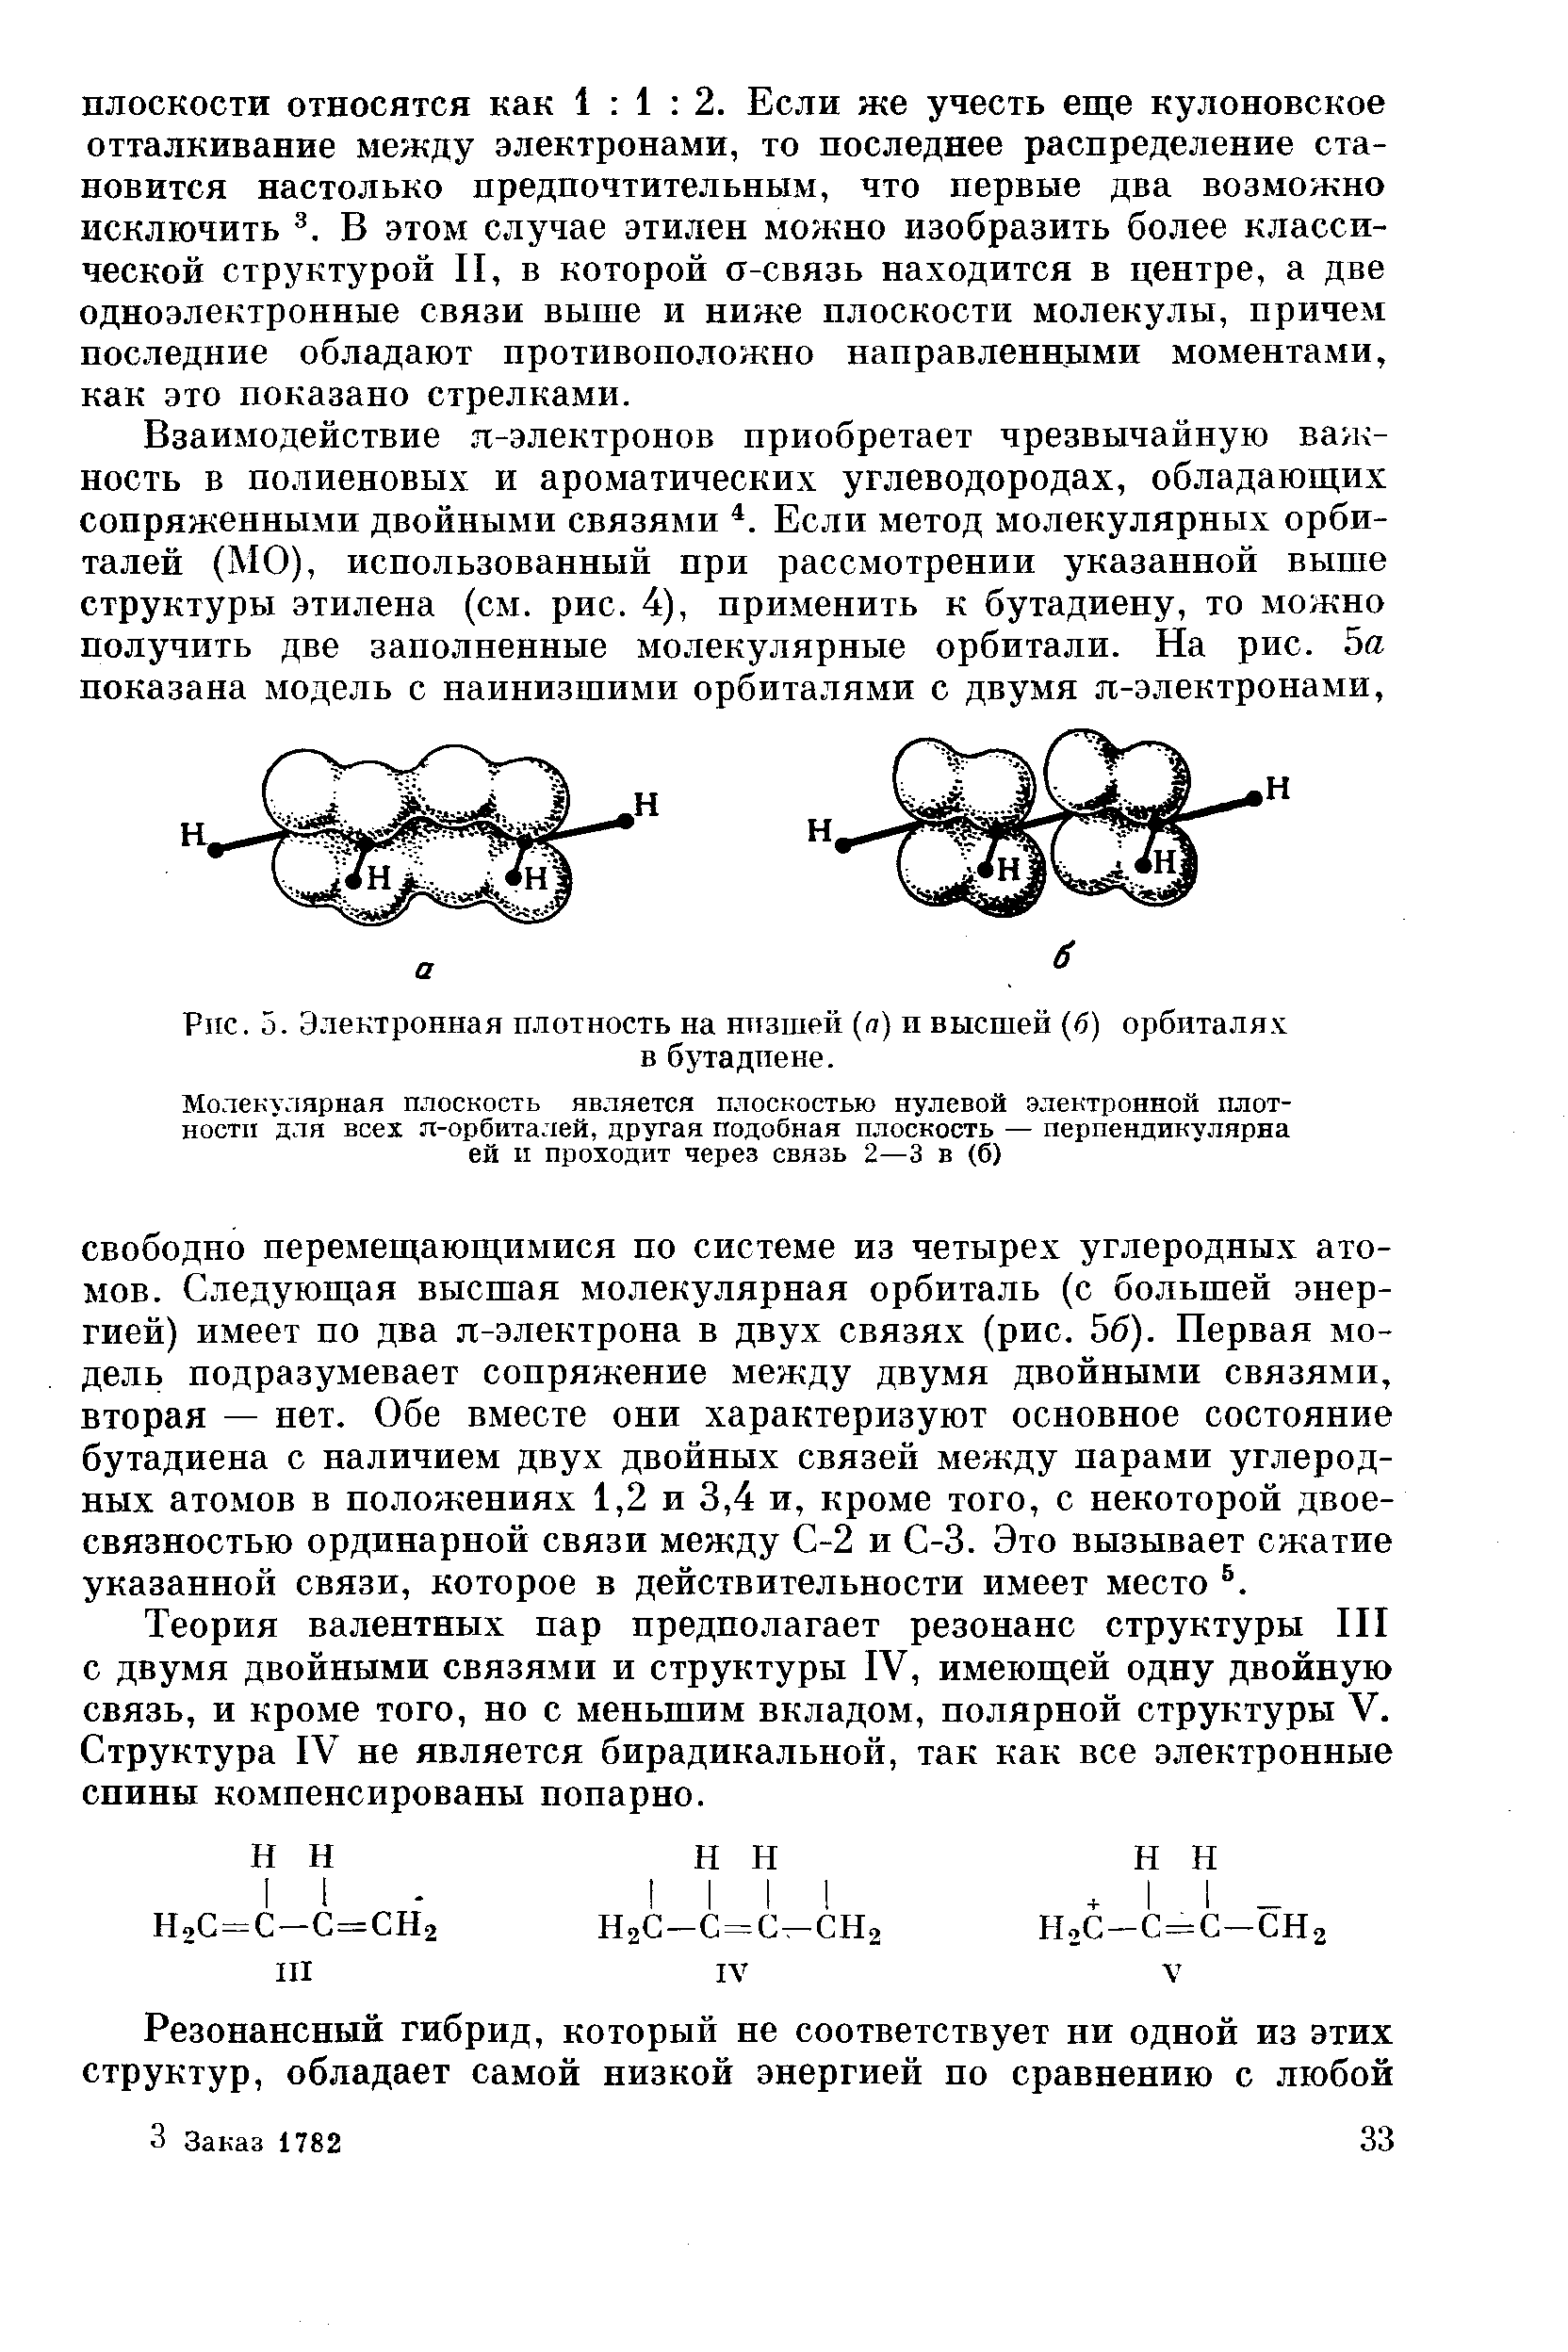 Взаимодействие я-электронов приобретает чрезвычайную важность в полиеновых и ароматических углеводородах, обладающих сопряженными двойными связями Если метод молекулярных орбиталей (МО), использованный при рассмотрении указанной выше структуры этилена (см. рис. 4), применить к бутадиену, то можно получить две заполненные молекулярные орбитали. На рис. 5а показана модель с наинизшими орбиталями с двумя я-электронами.